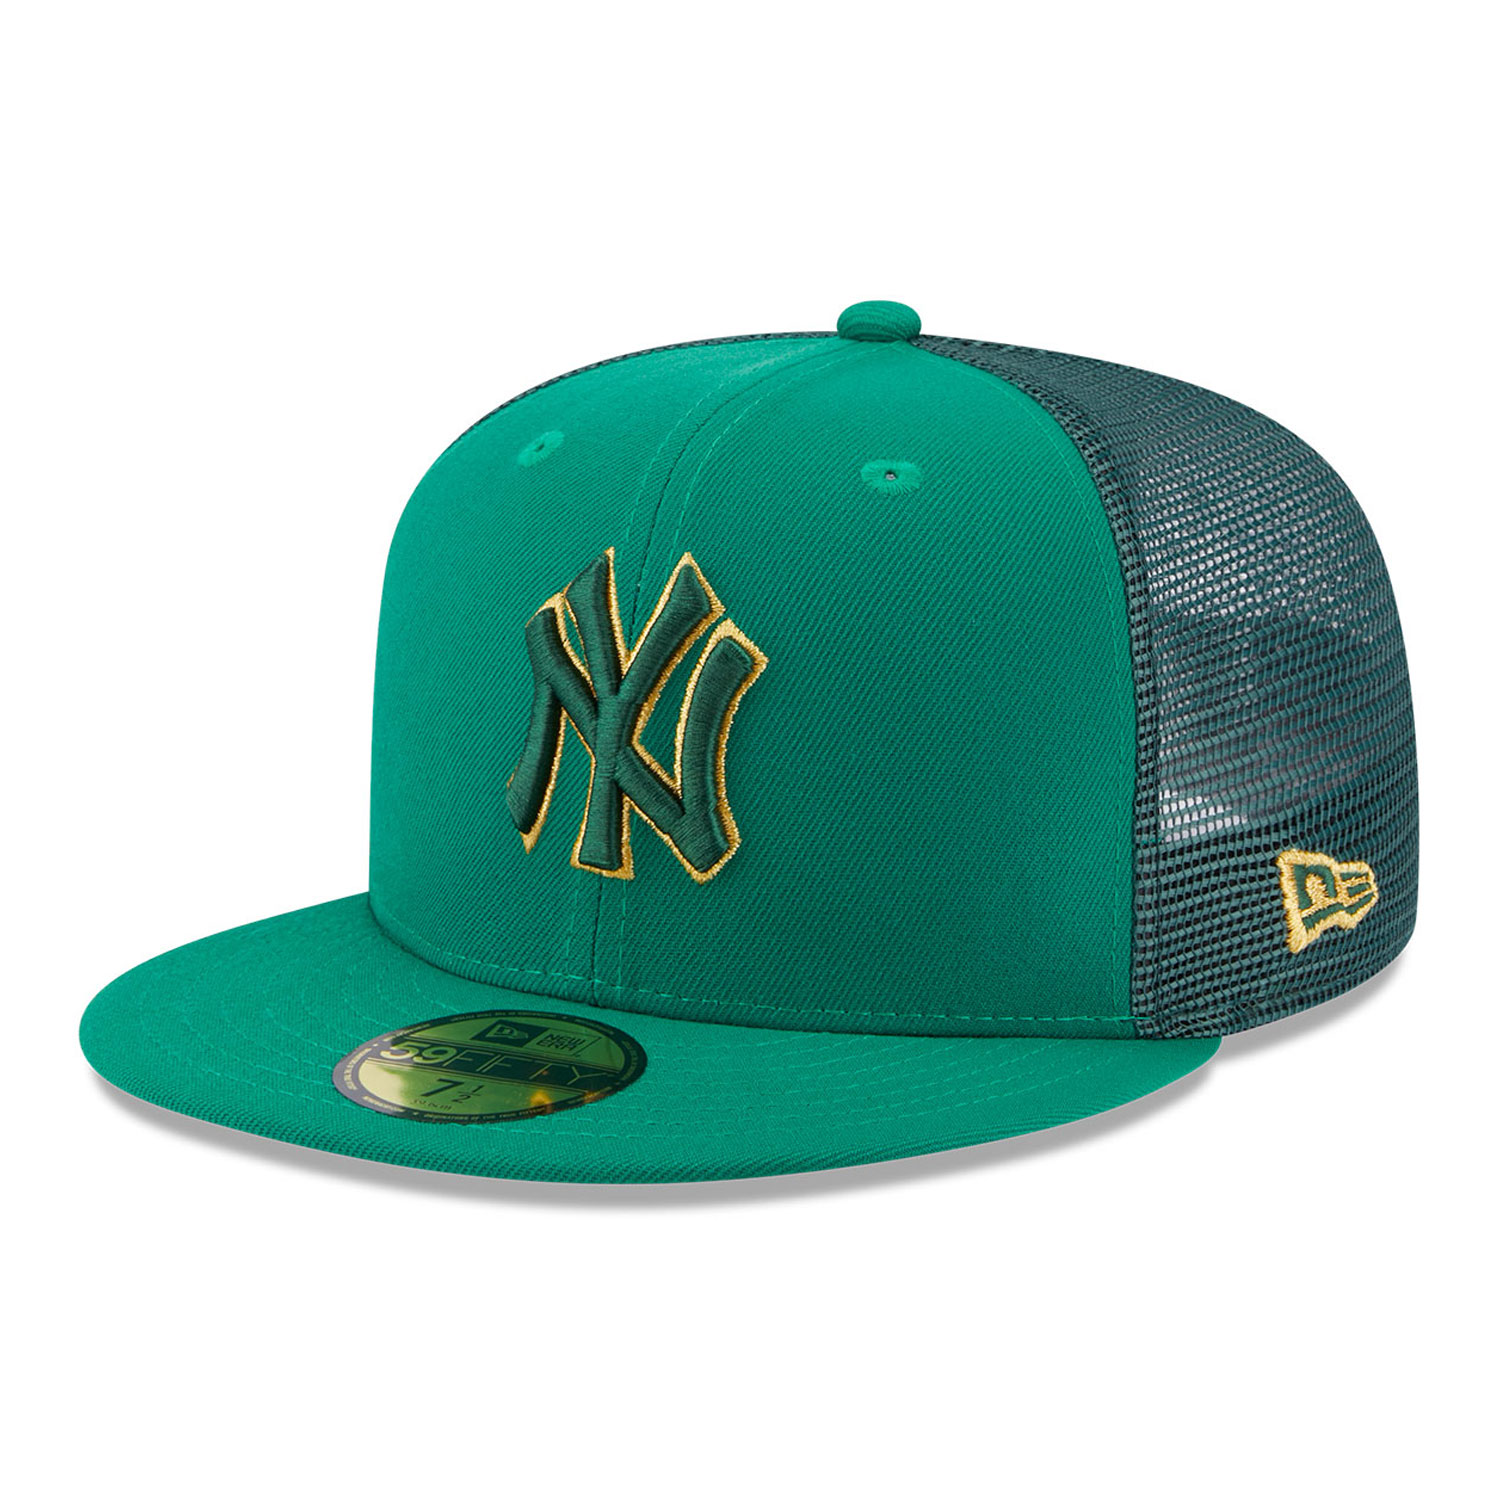 Detener tener la seguridad Gorras, sombreros y ropa de los Yankees de Nueva York | New Era Cap España